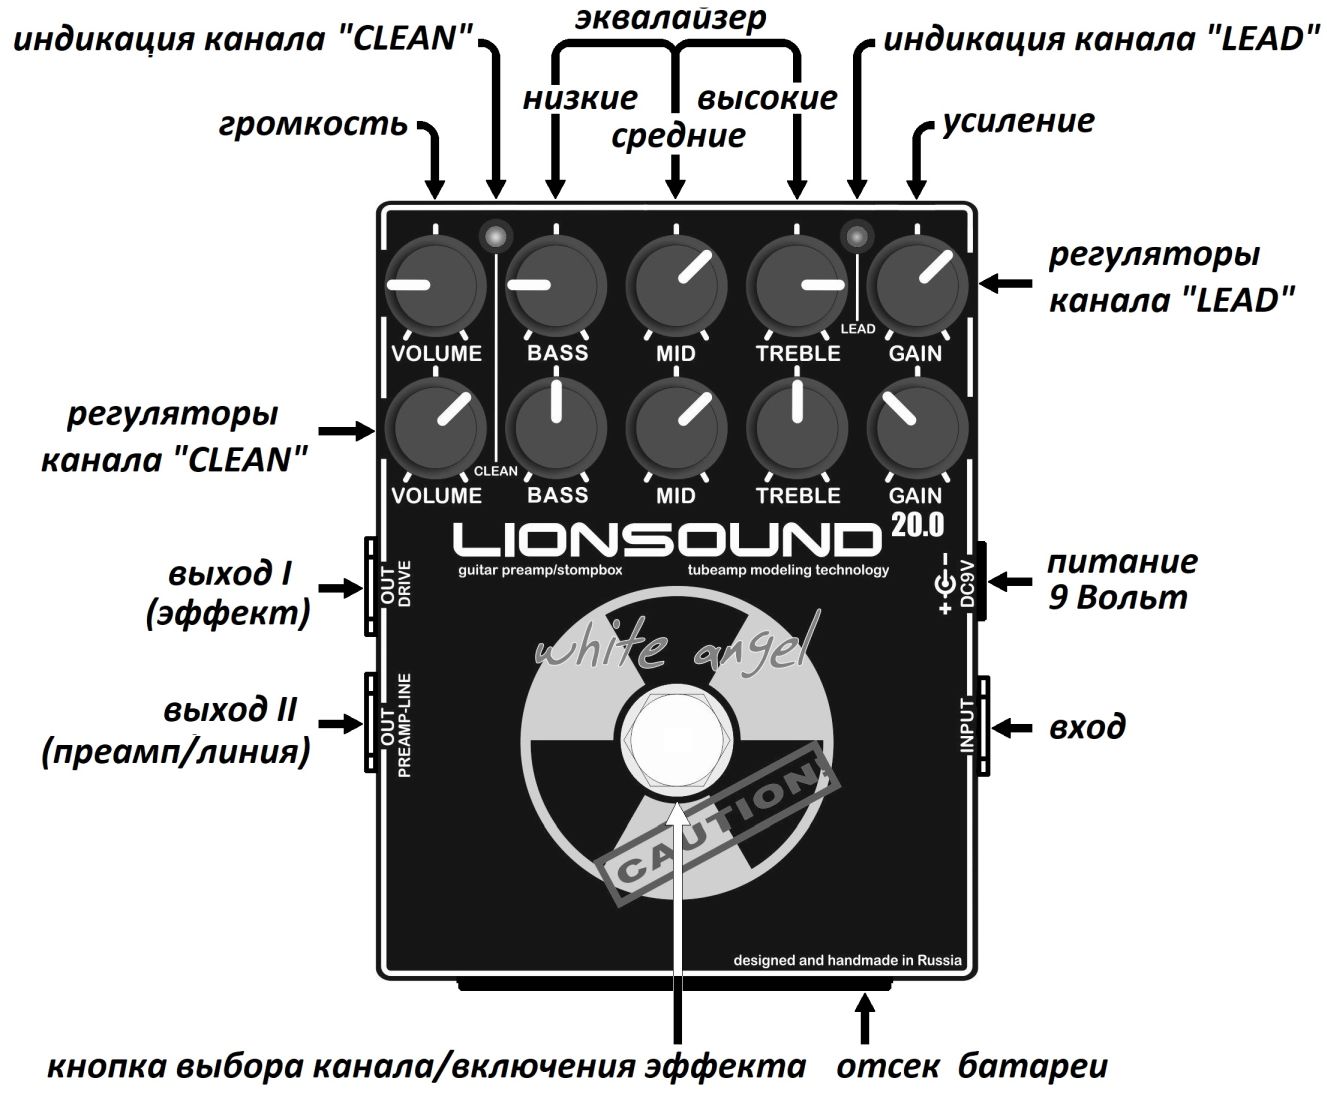 Lionsound 20.0